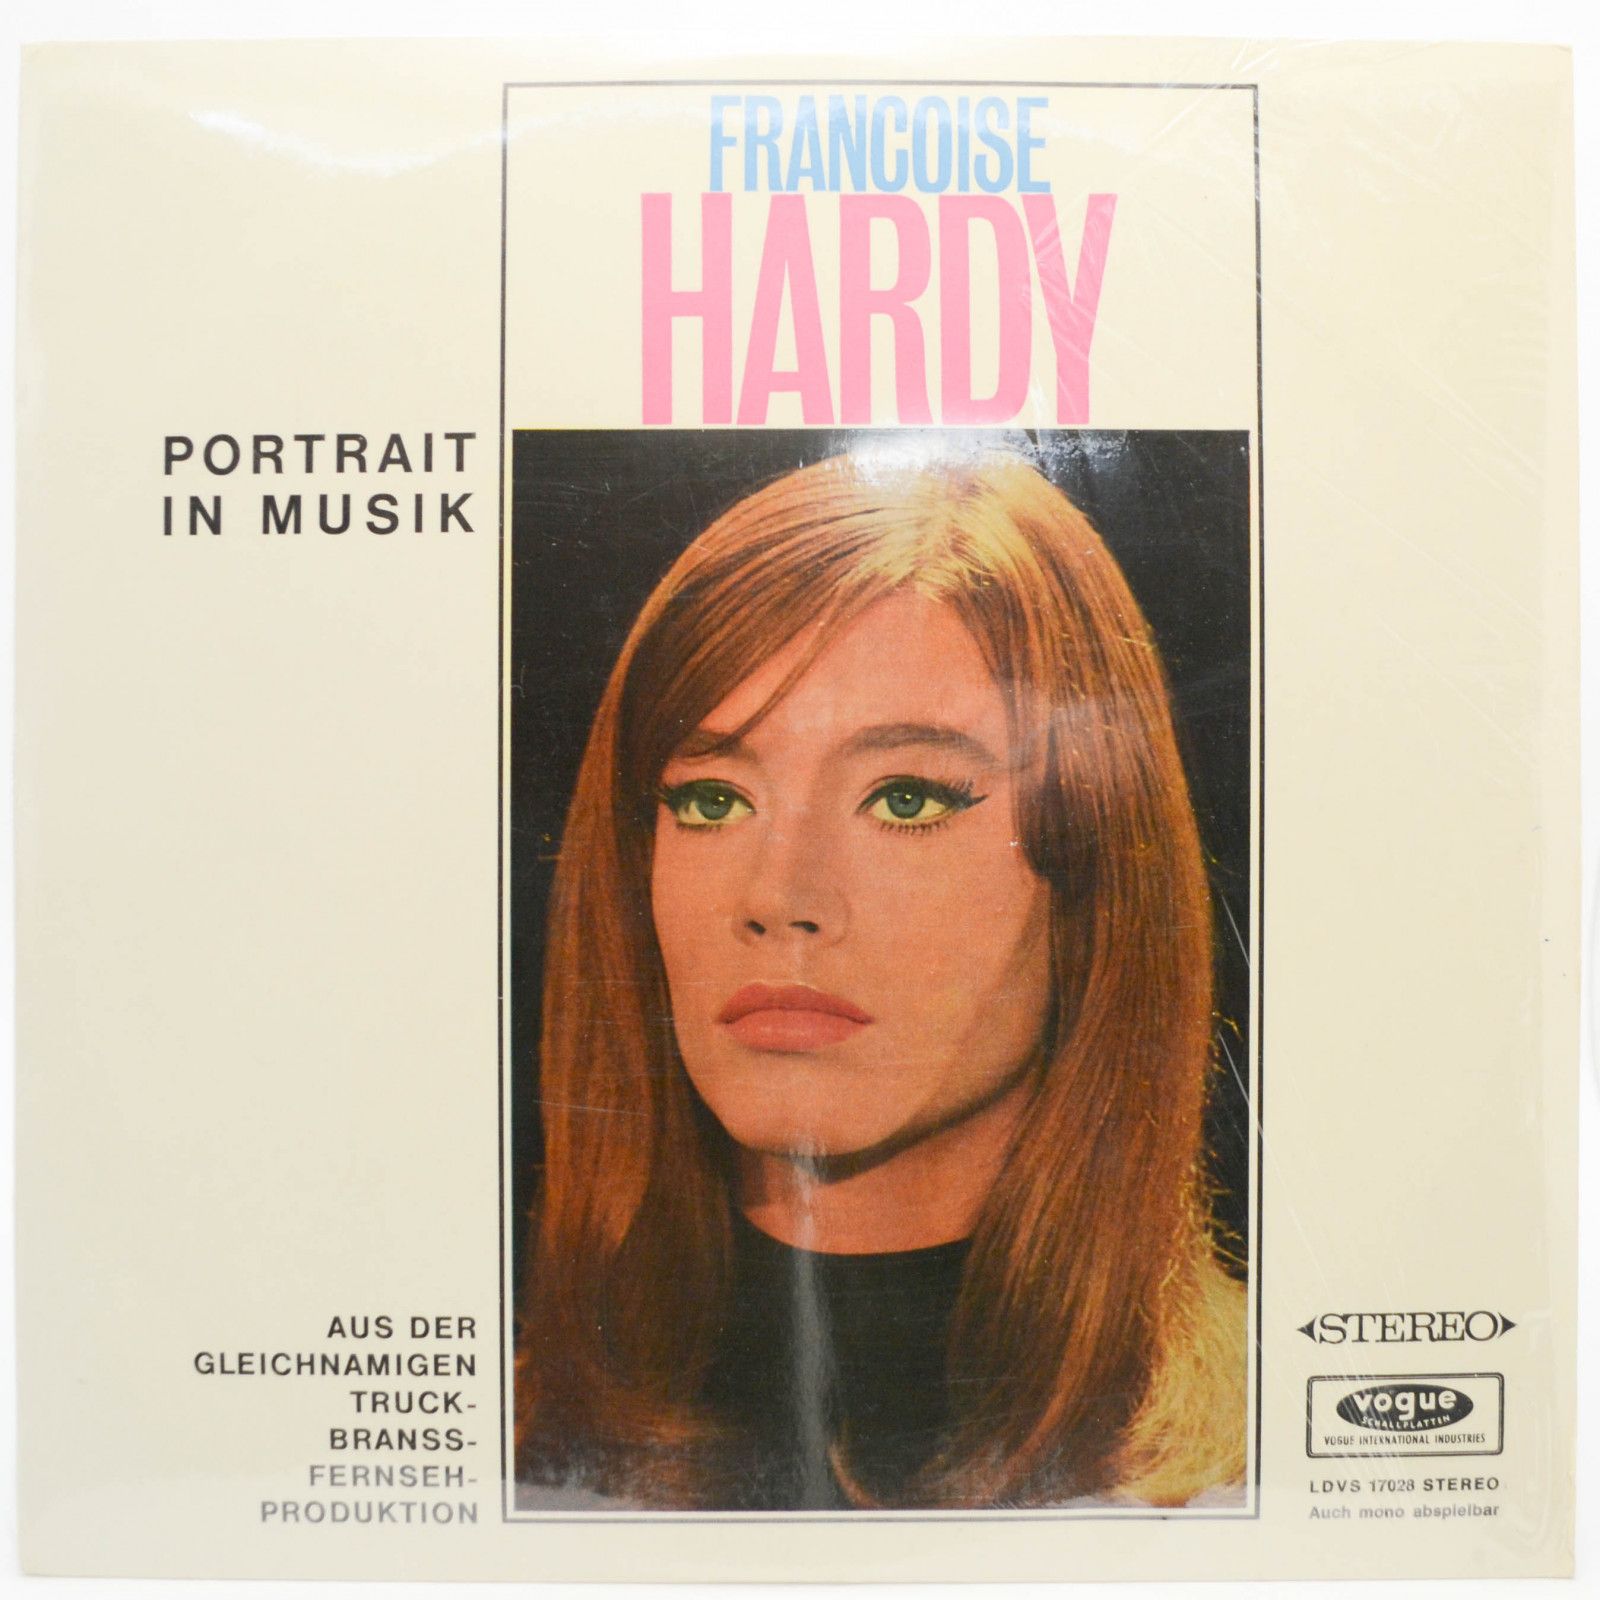 Françoise Hardy — Portrait In Musik, 1965